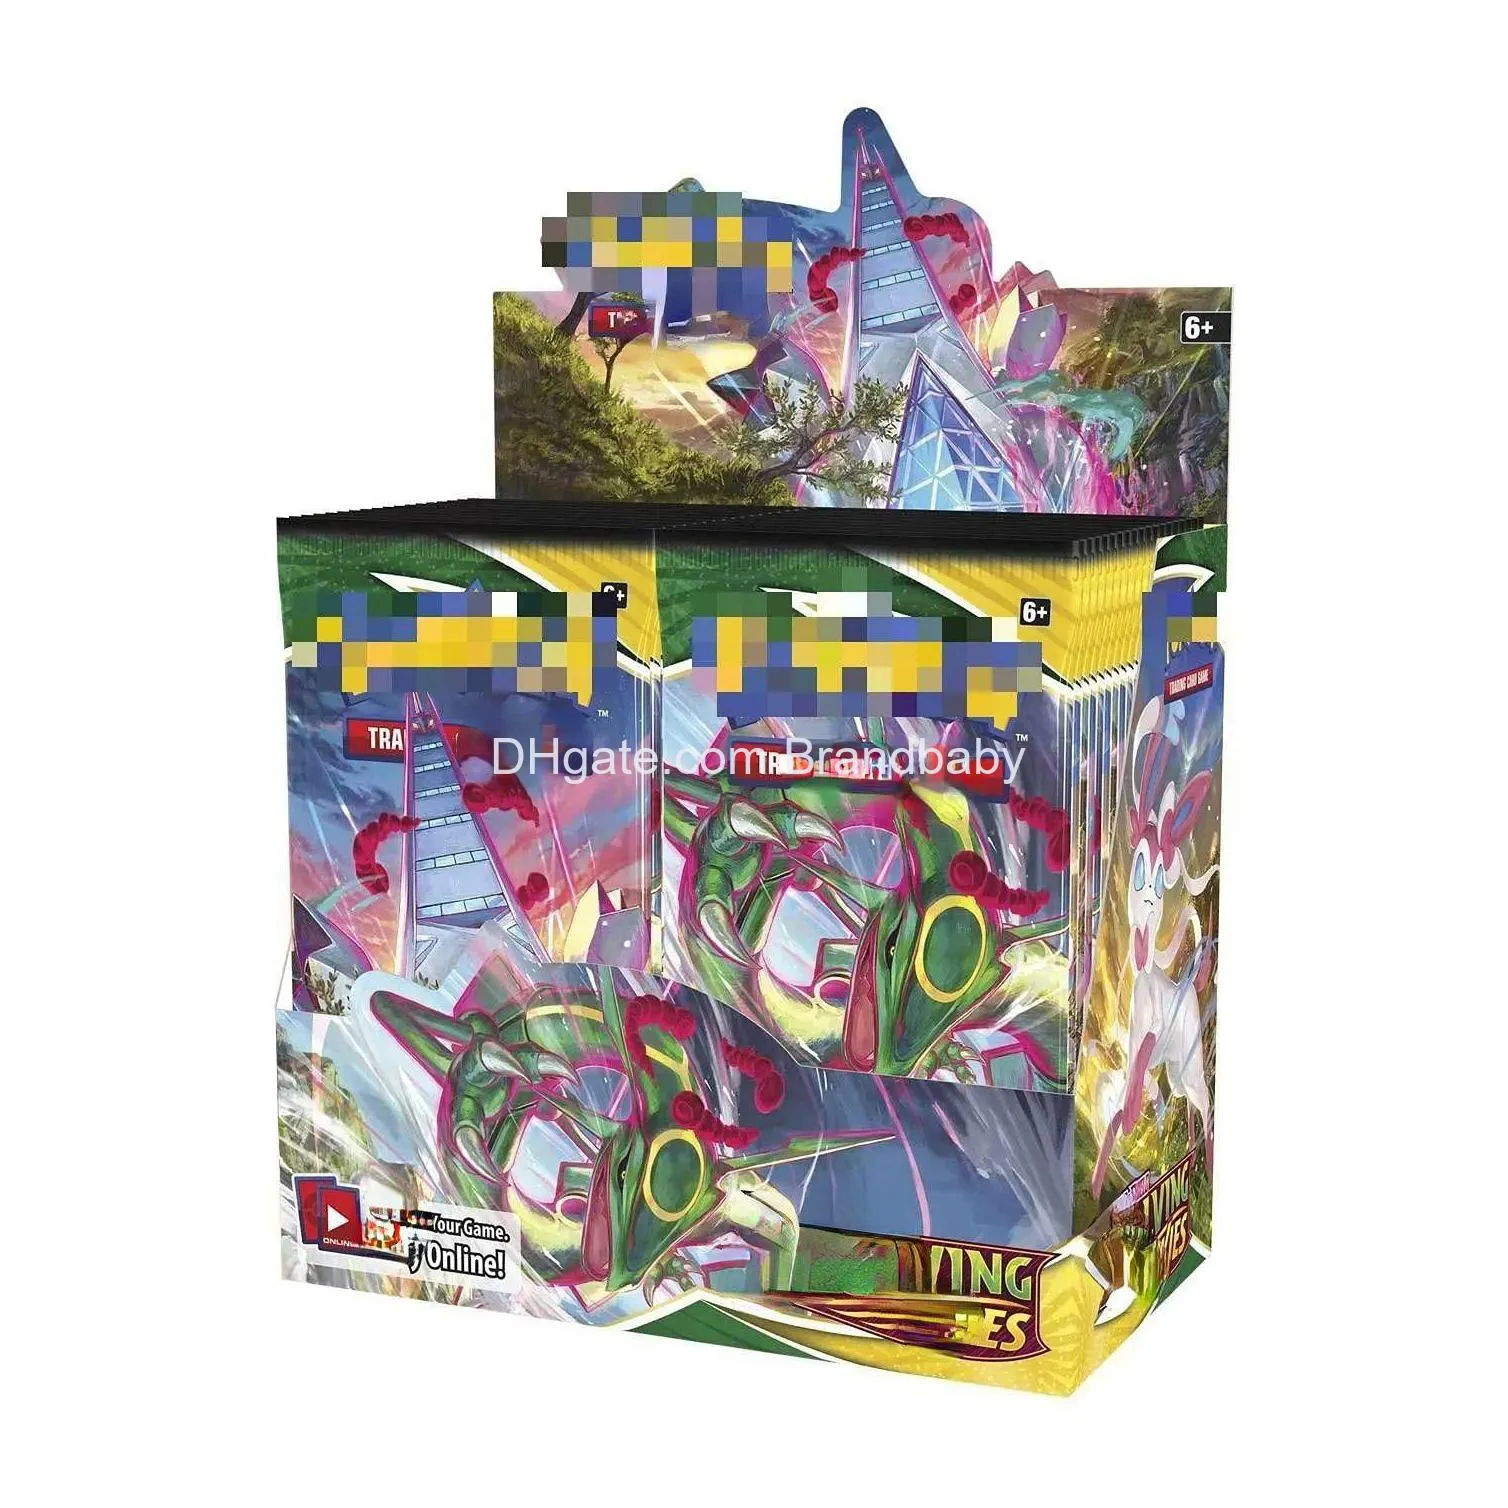 Jogos de cartas 360 Entertainment Collection Board Game Fighting Wizard Fabricante inglês Drop Delivery Brinquedos Presentes Puzzles Dhvq1